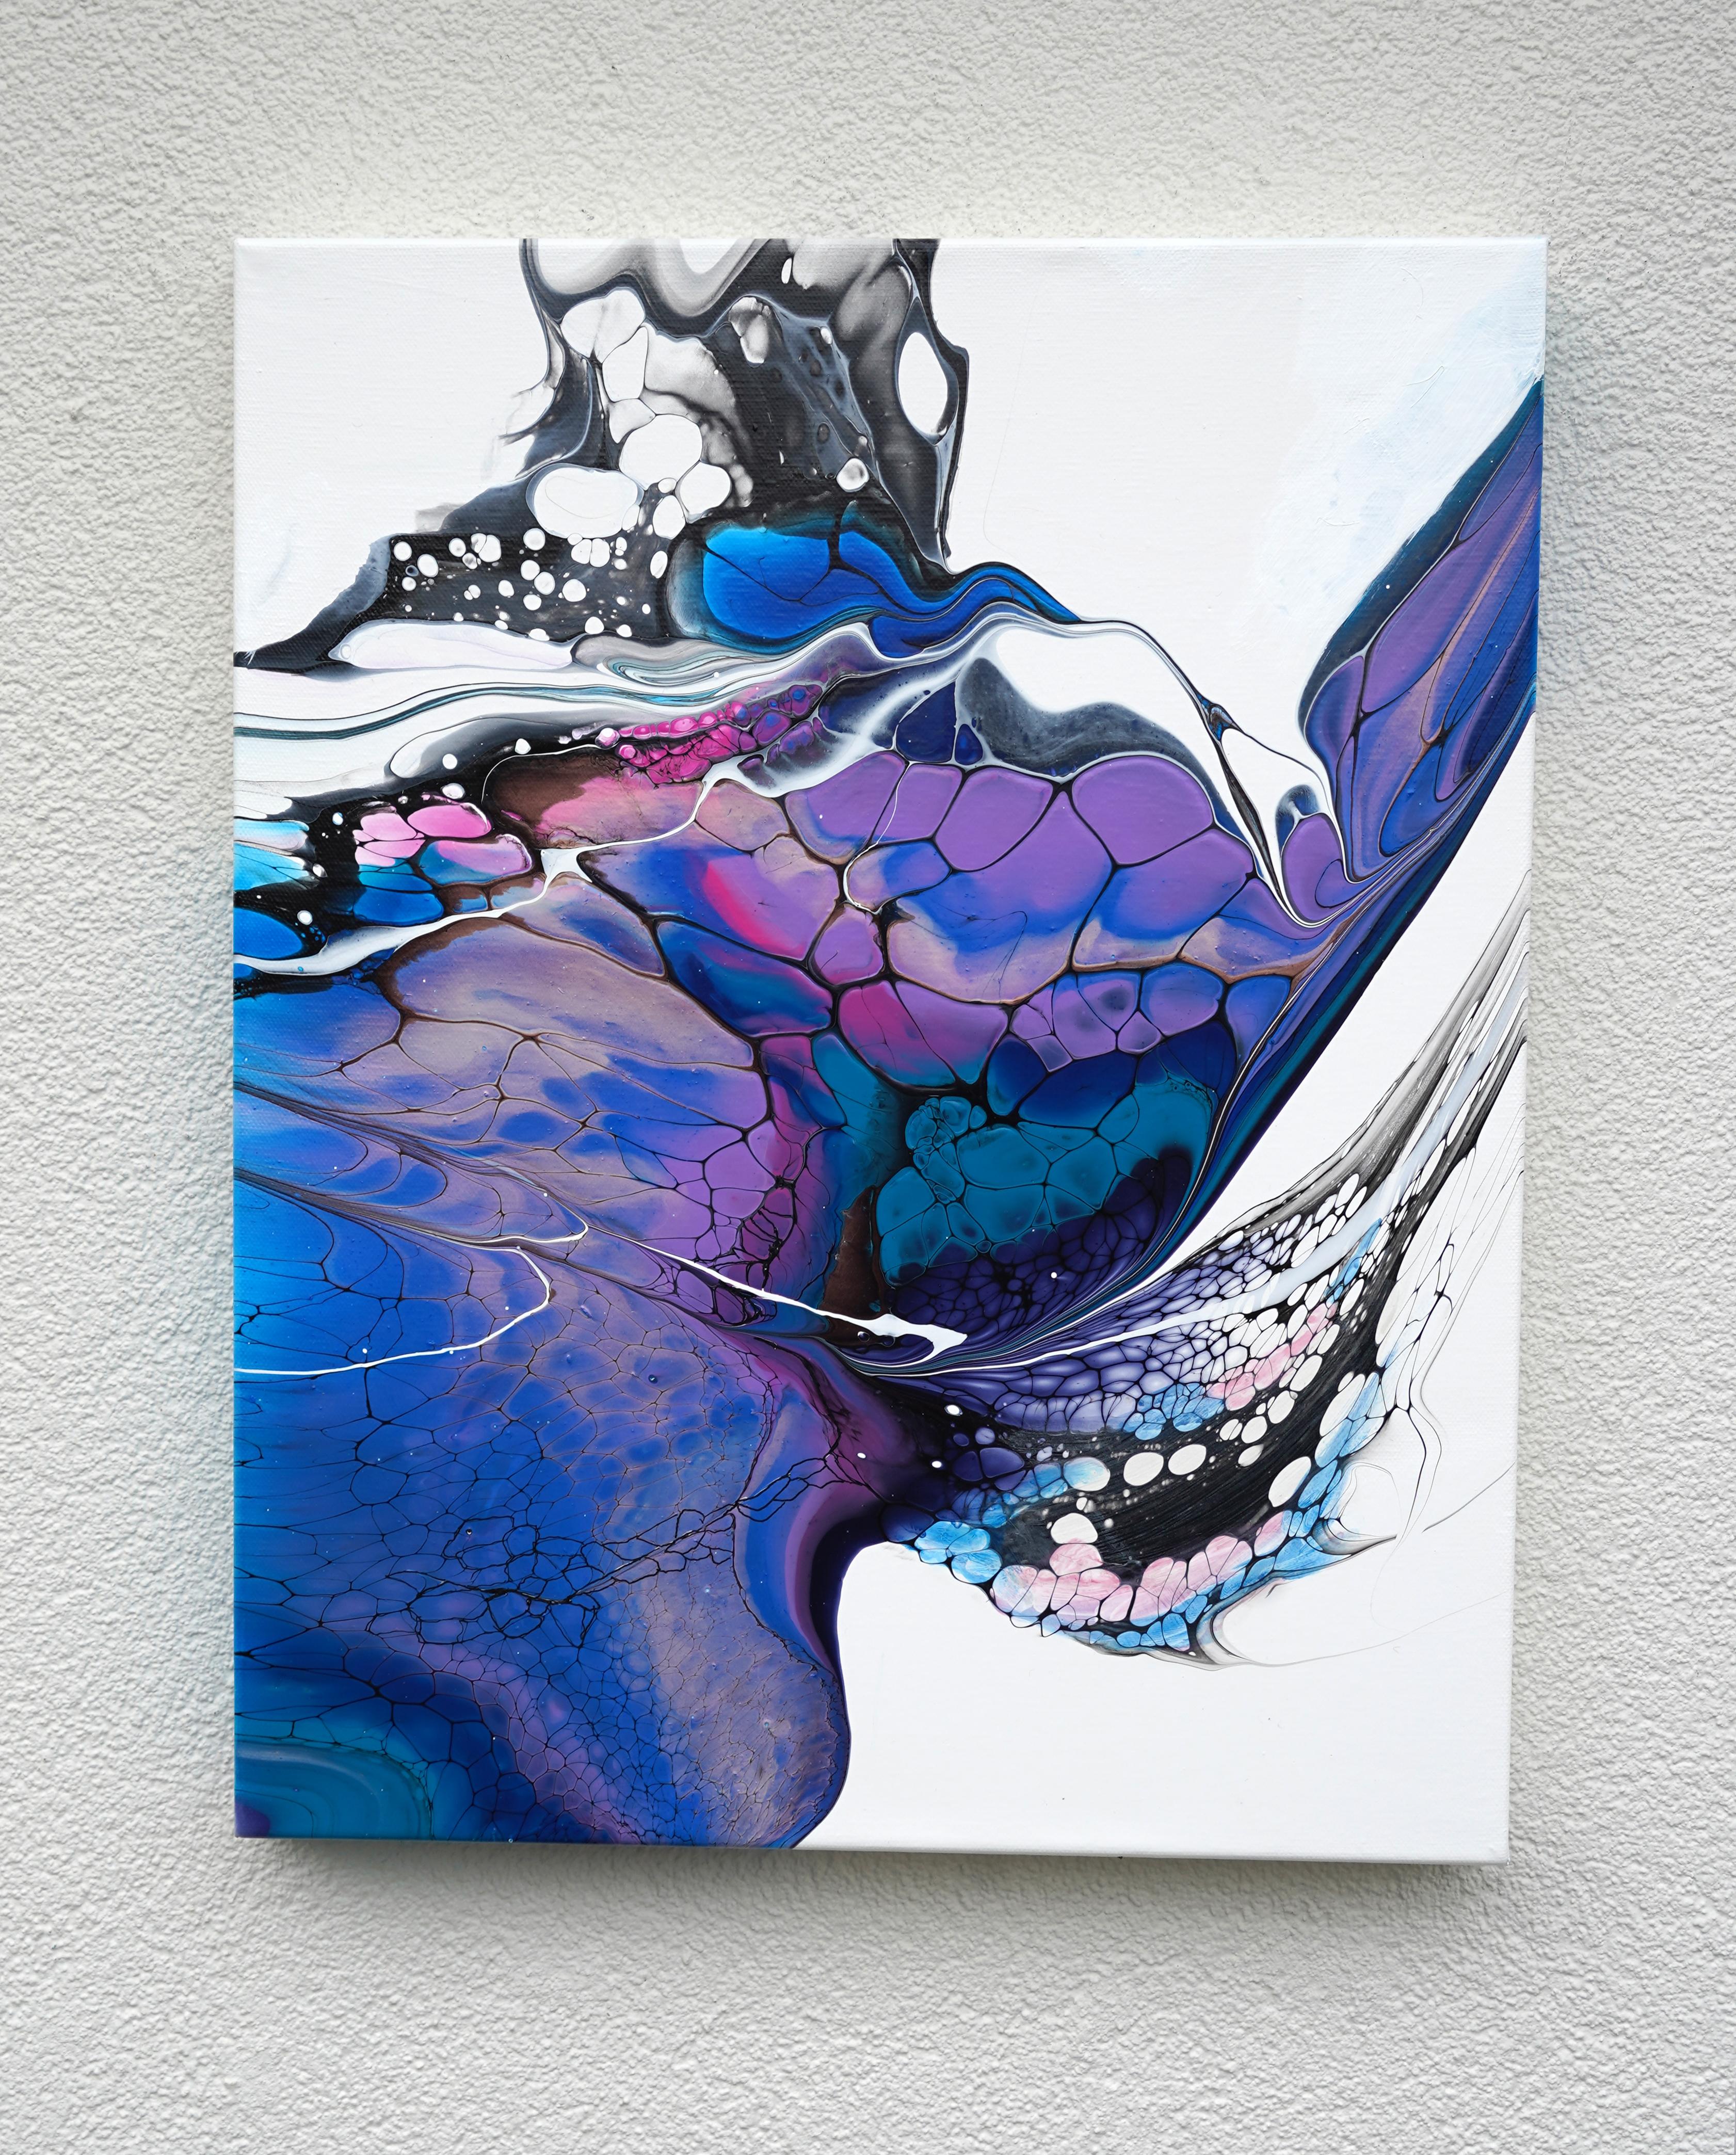 <p>Kommentare des Künstlers<br>Lavendel, Blau und Magenta verschmelzen zu einer faszinierenden Farbpalette. Die Zellen sind unterschiedlich groß und breiten sich spontan aus, so dass die Illusion einer Bewegung entsteht. Das Kunstwerk ist Teil der